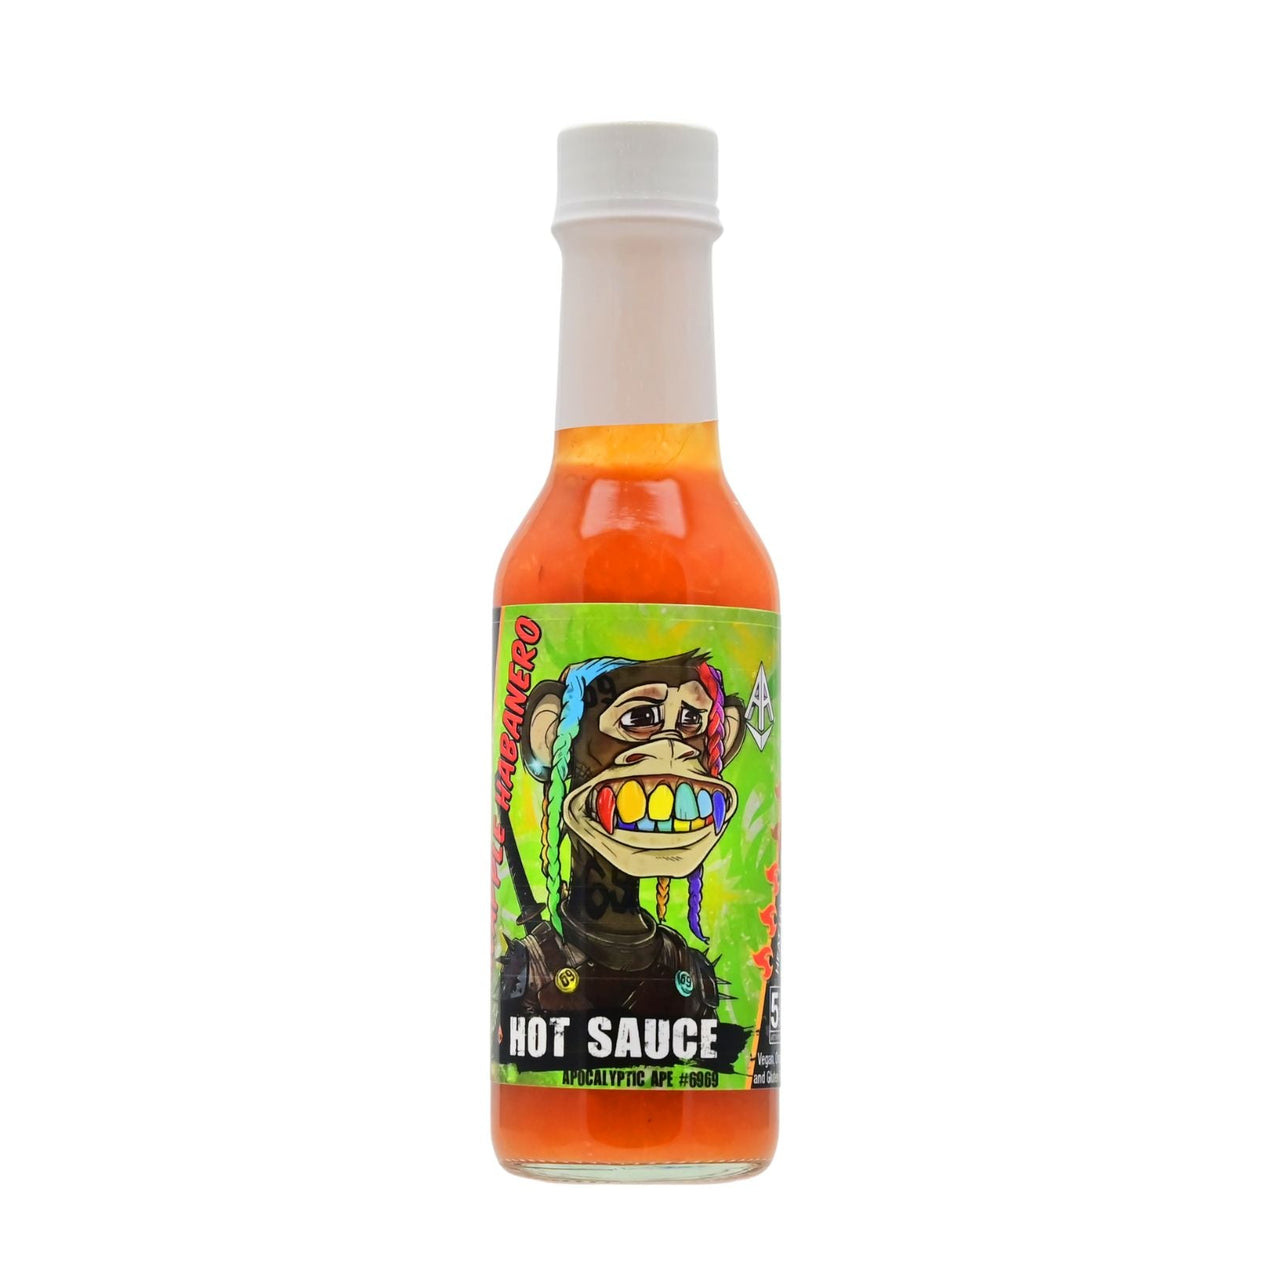 Apocalyptic Ape #6969 Pineapple Habanero Hot Sauce